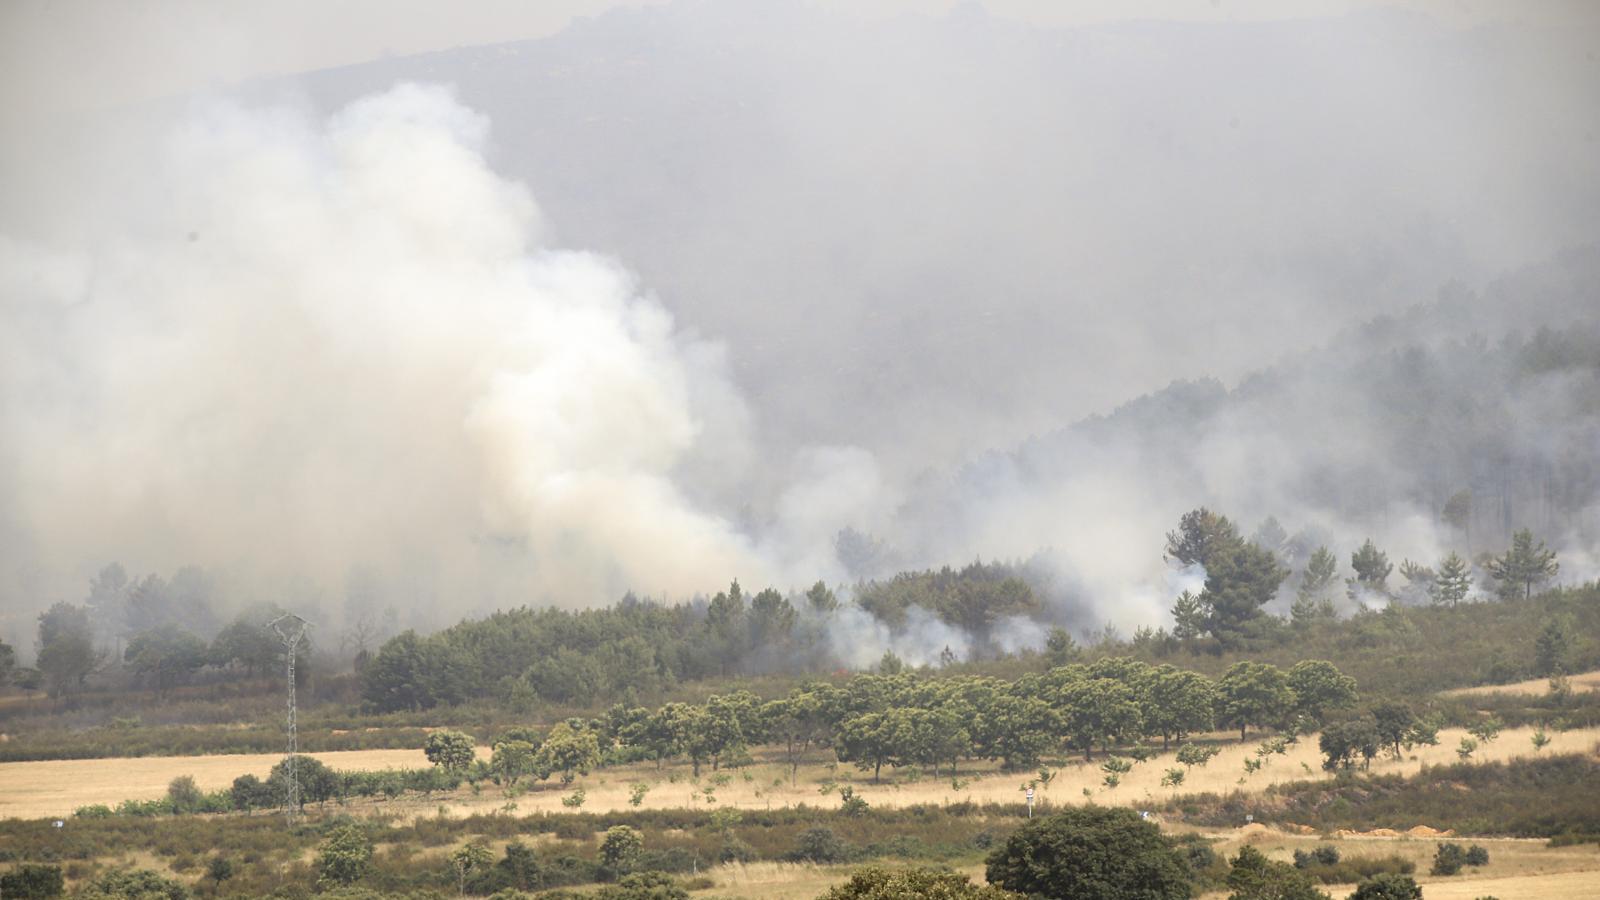 Madrid envía una treintena de efectivos para ayudar en el incendio de Zamora